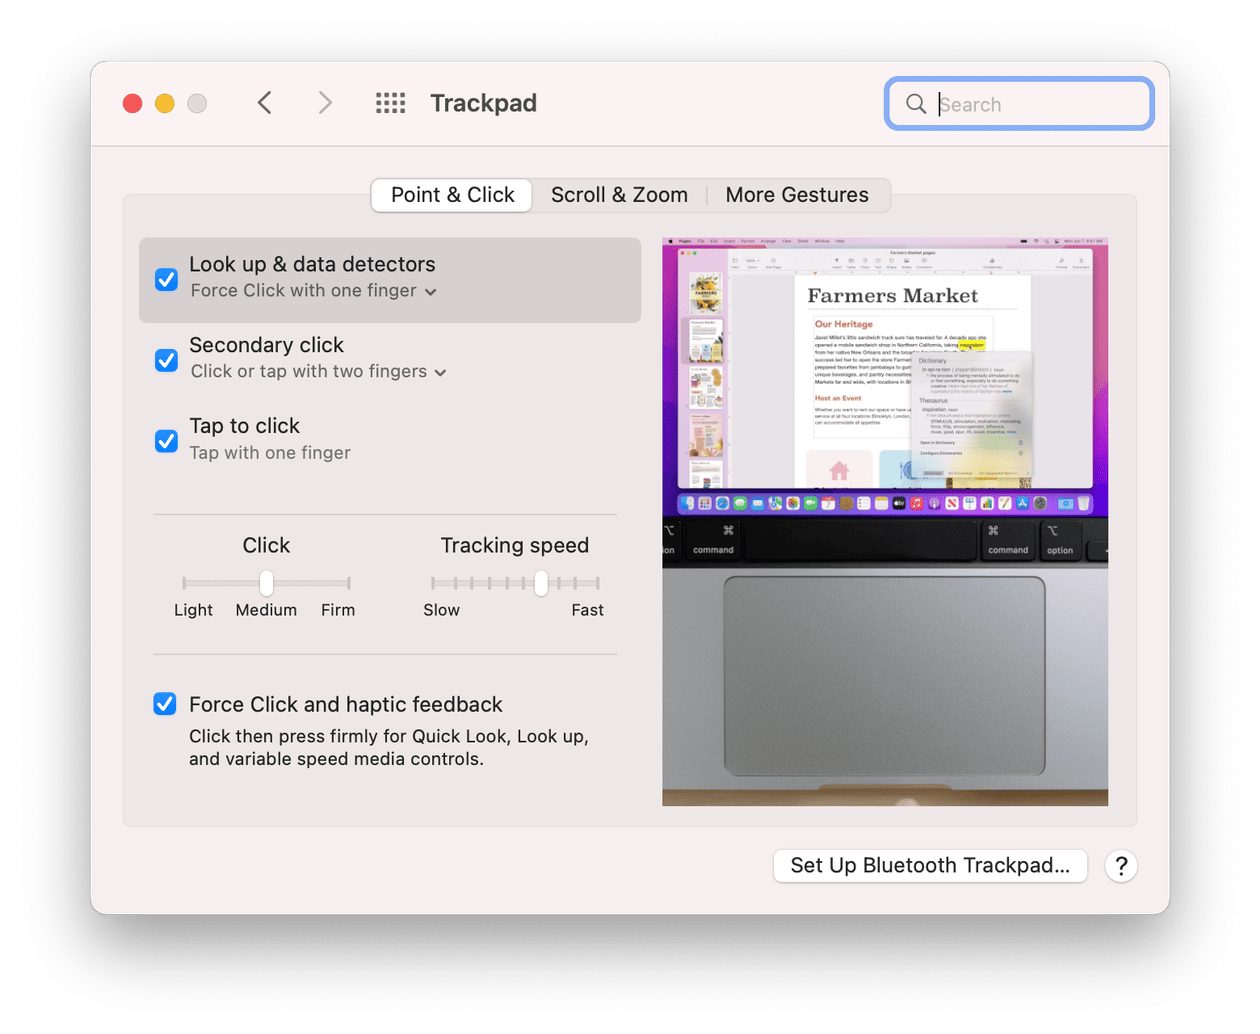 Trackpad settings on Mac